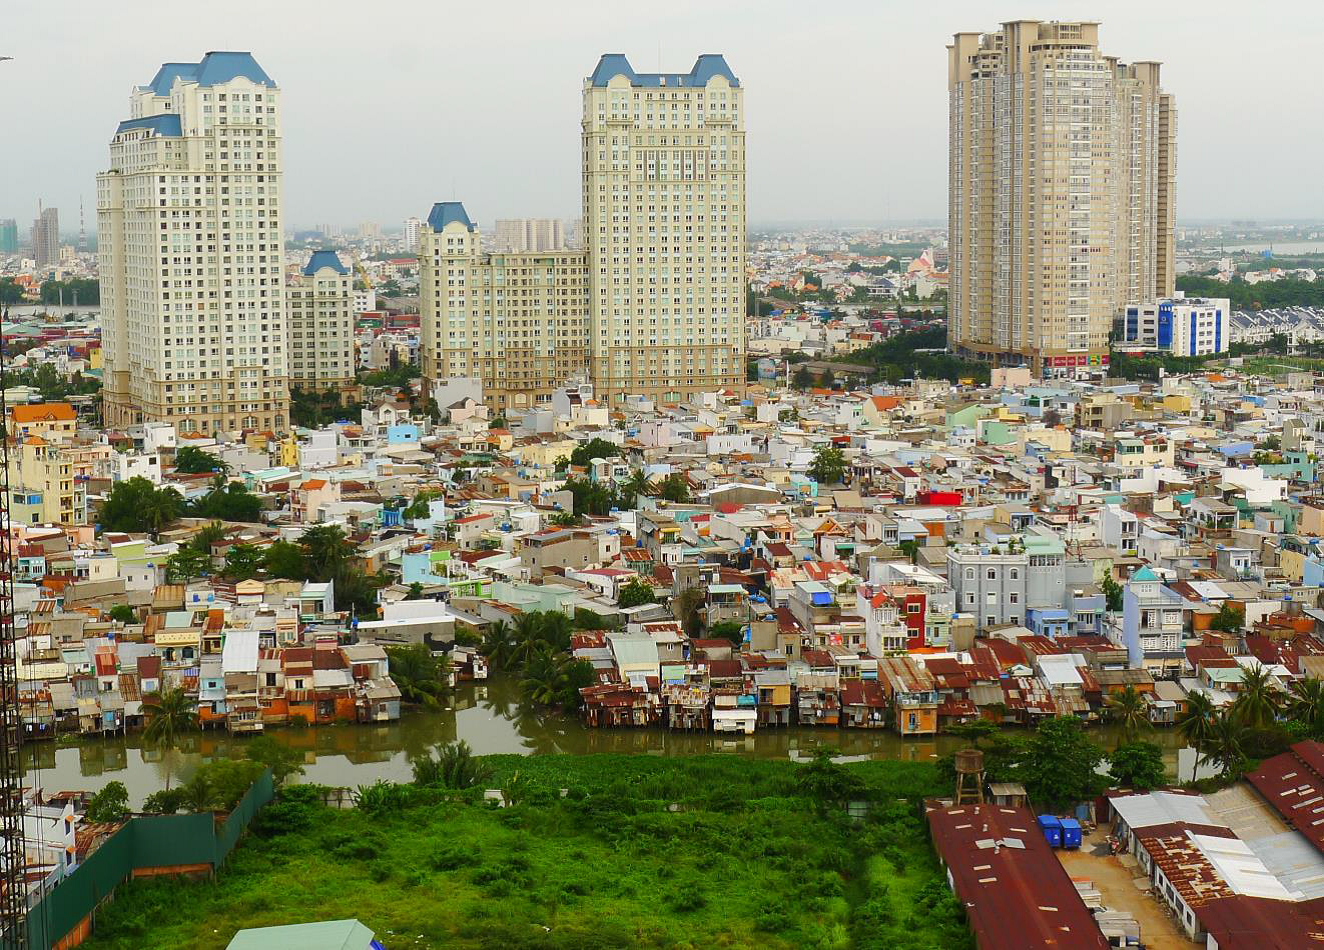 Architecture des villes d’Asie du Sud-Est : vers des expressions de la modernité en rapport avec les héritages